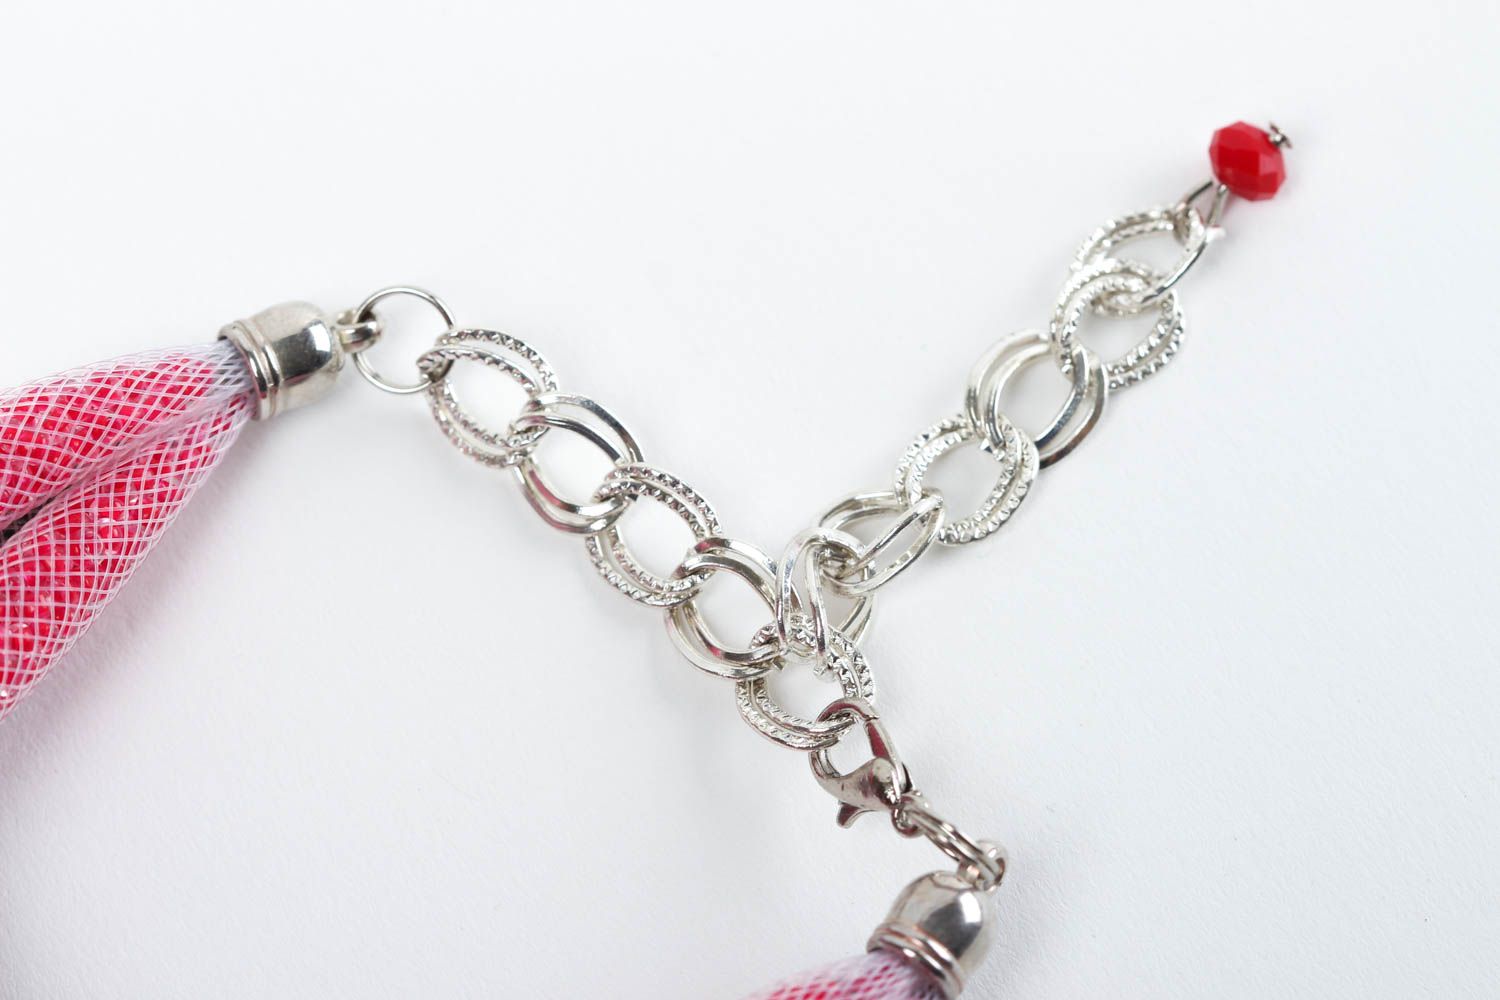 Handmade bracelet designer bracelet beads accessory unusual gift handmade photo 4